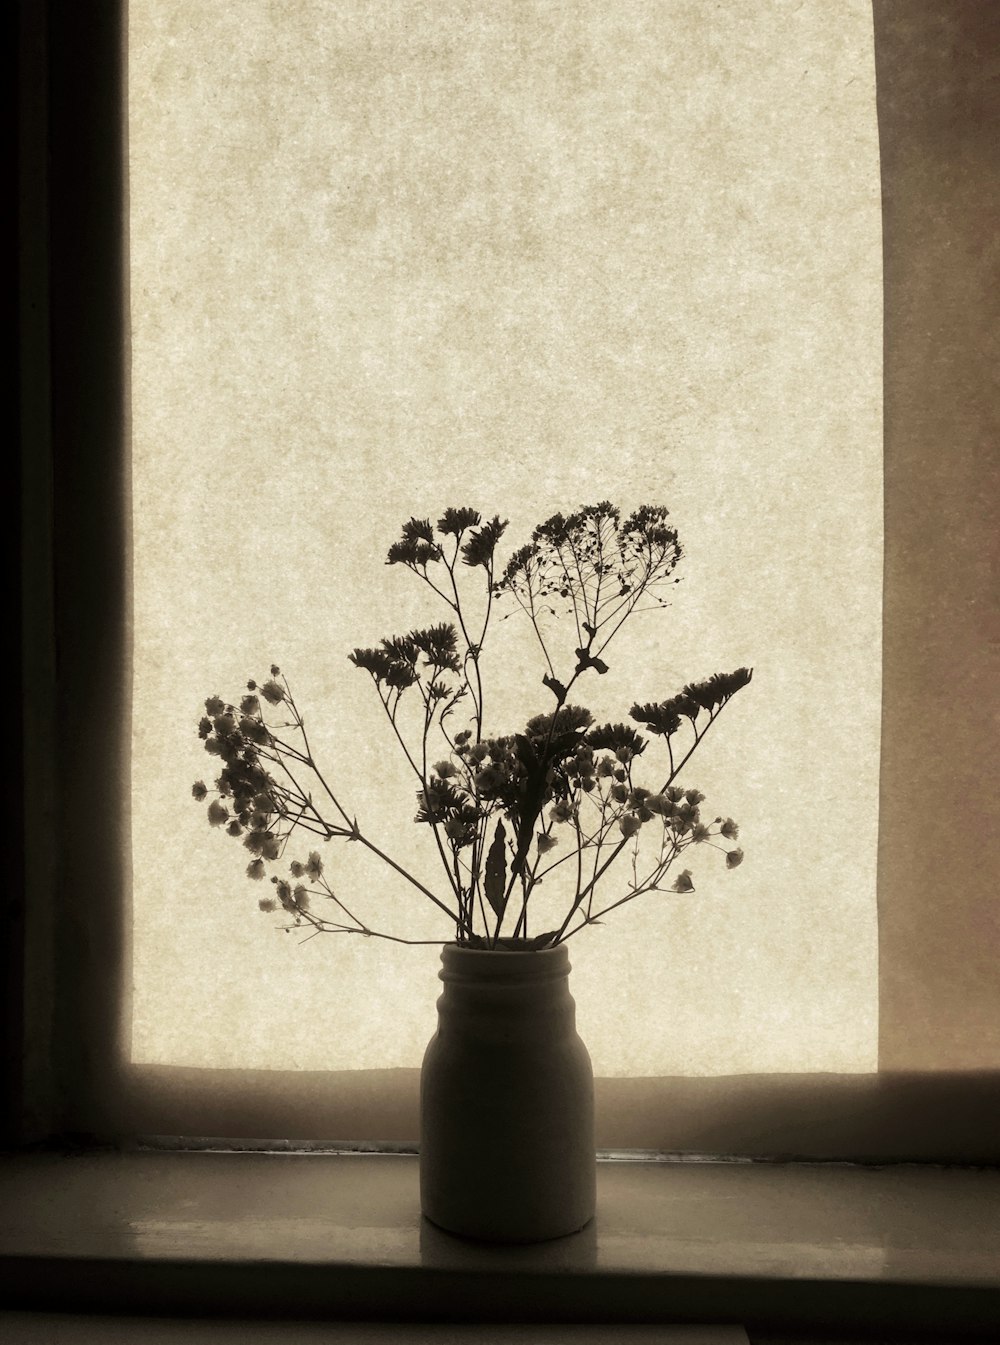 foto in scala di grigi della pianta sul vaso